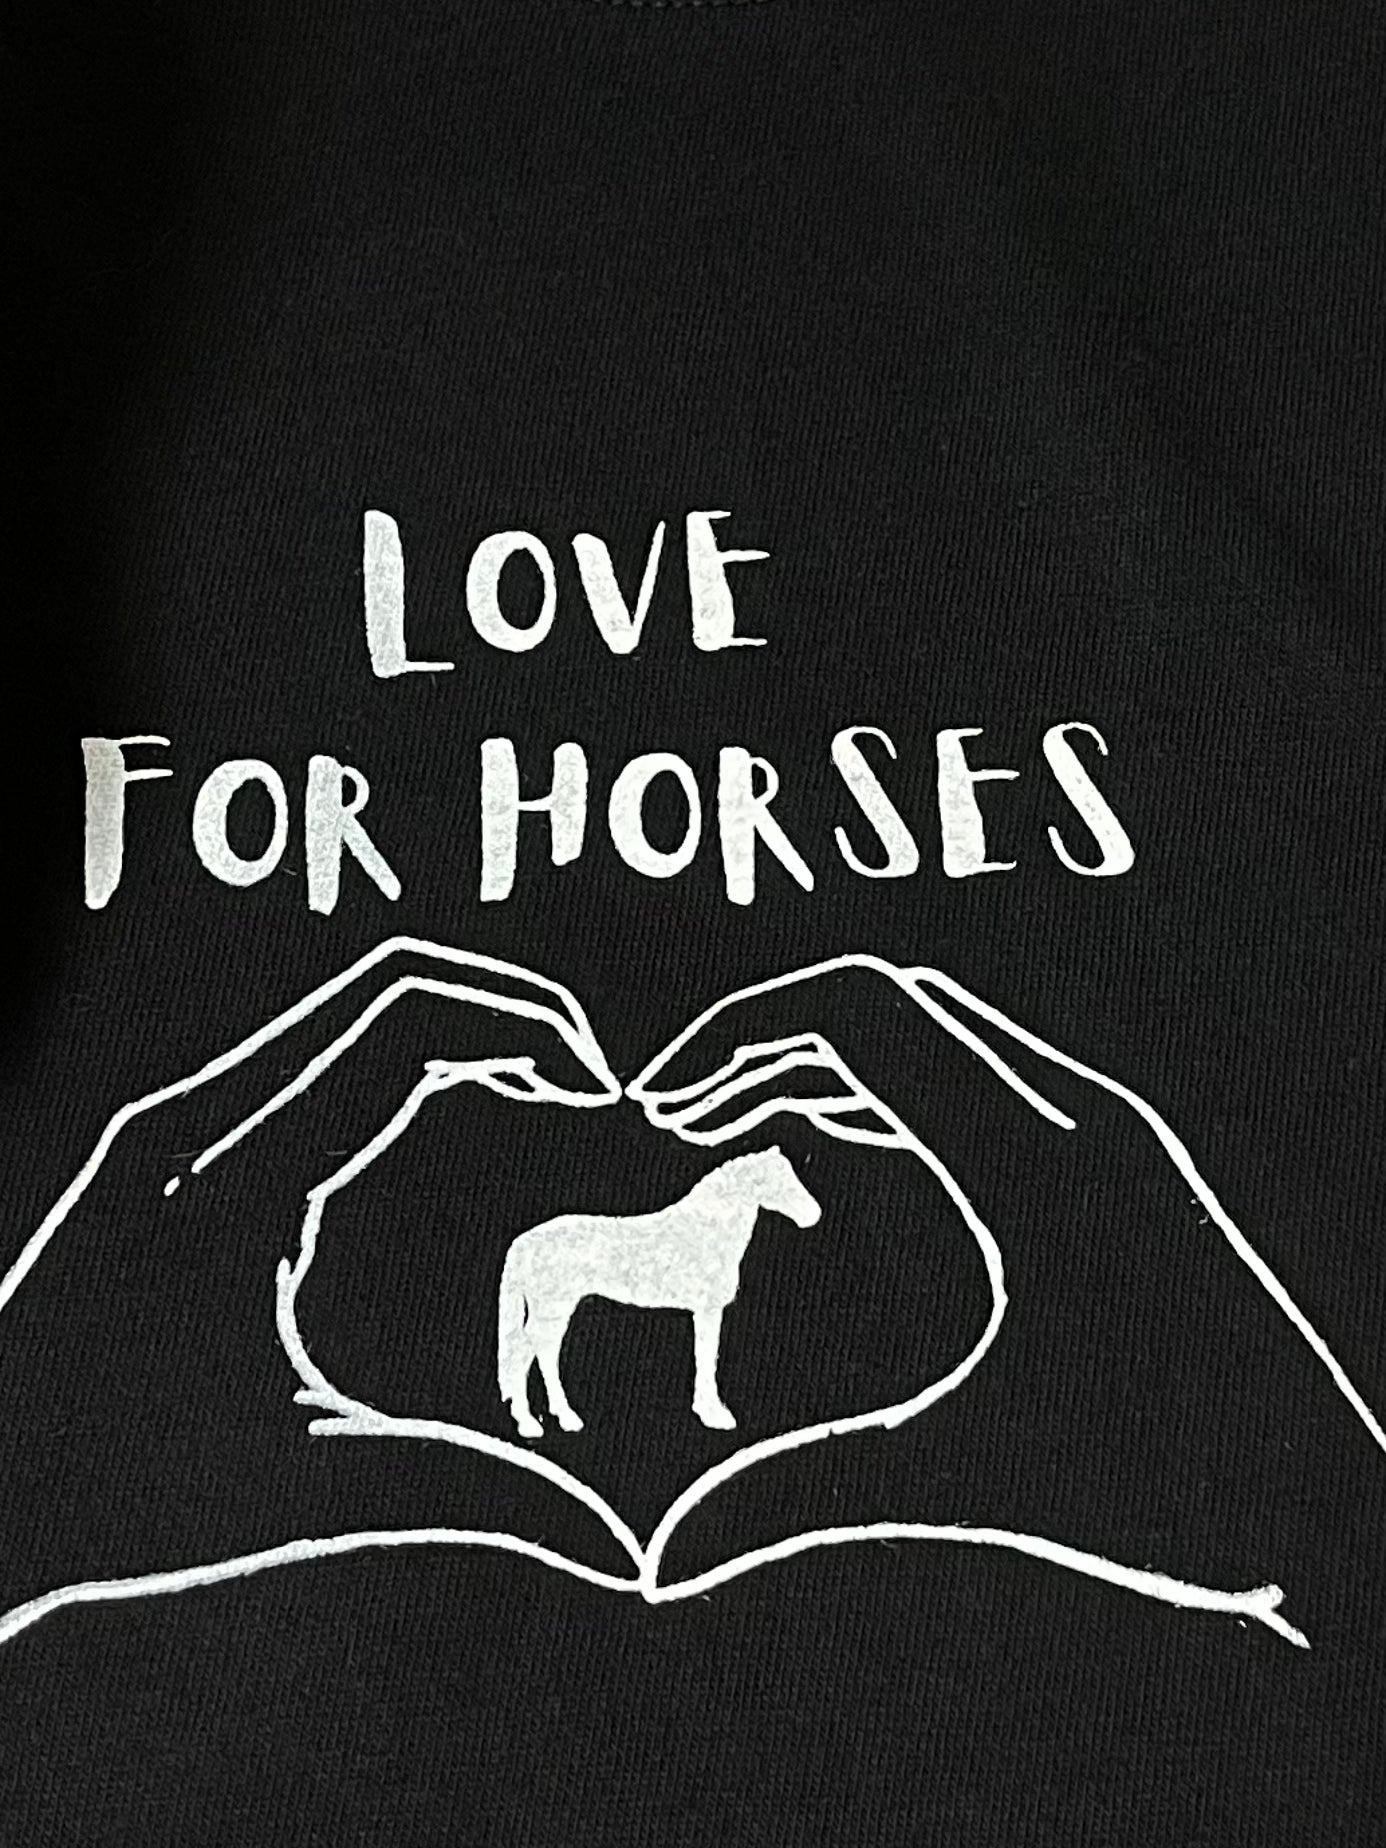 LOVE FOR HORSES